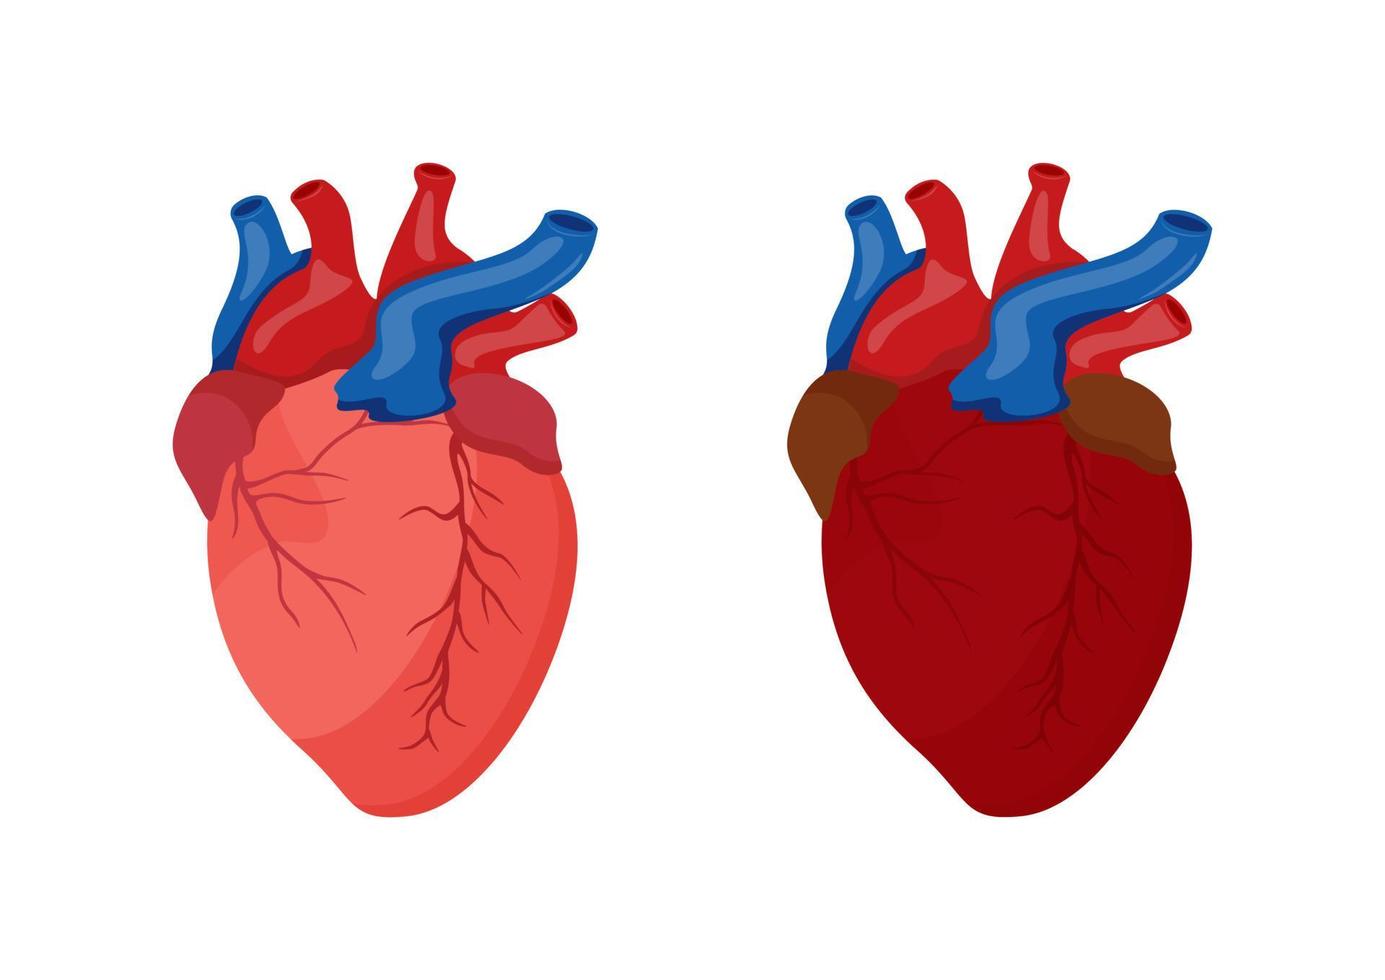 disegno del fumetto del cuore umano. illustrazione vettoriale del cuore umano isolato su sfondo bianco